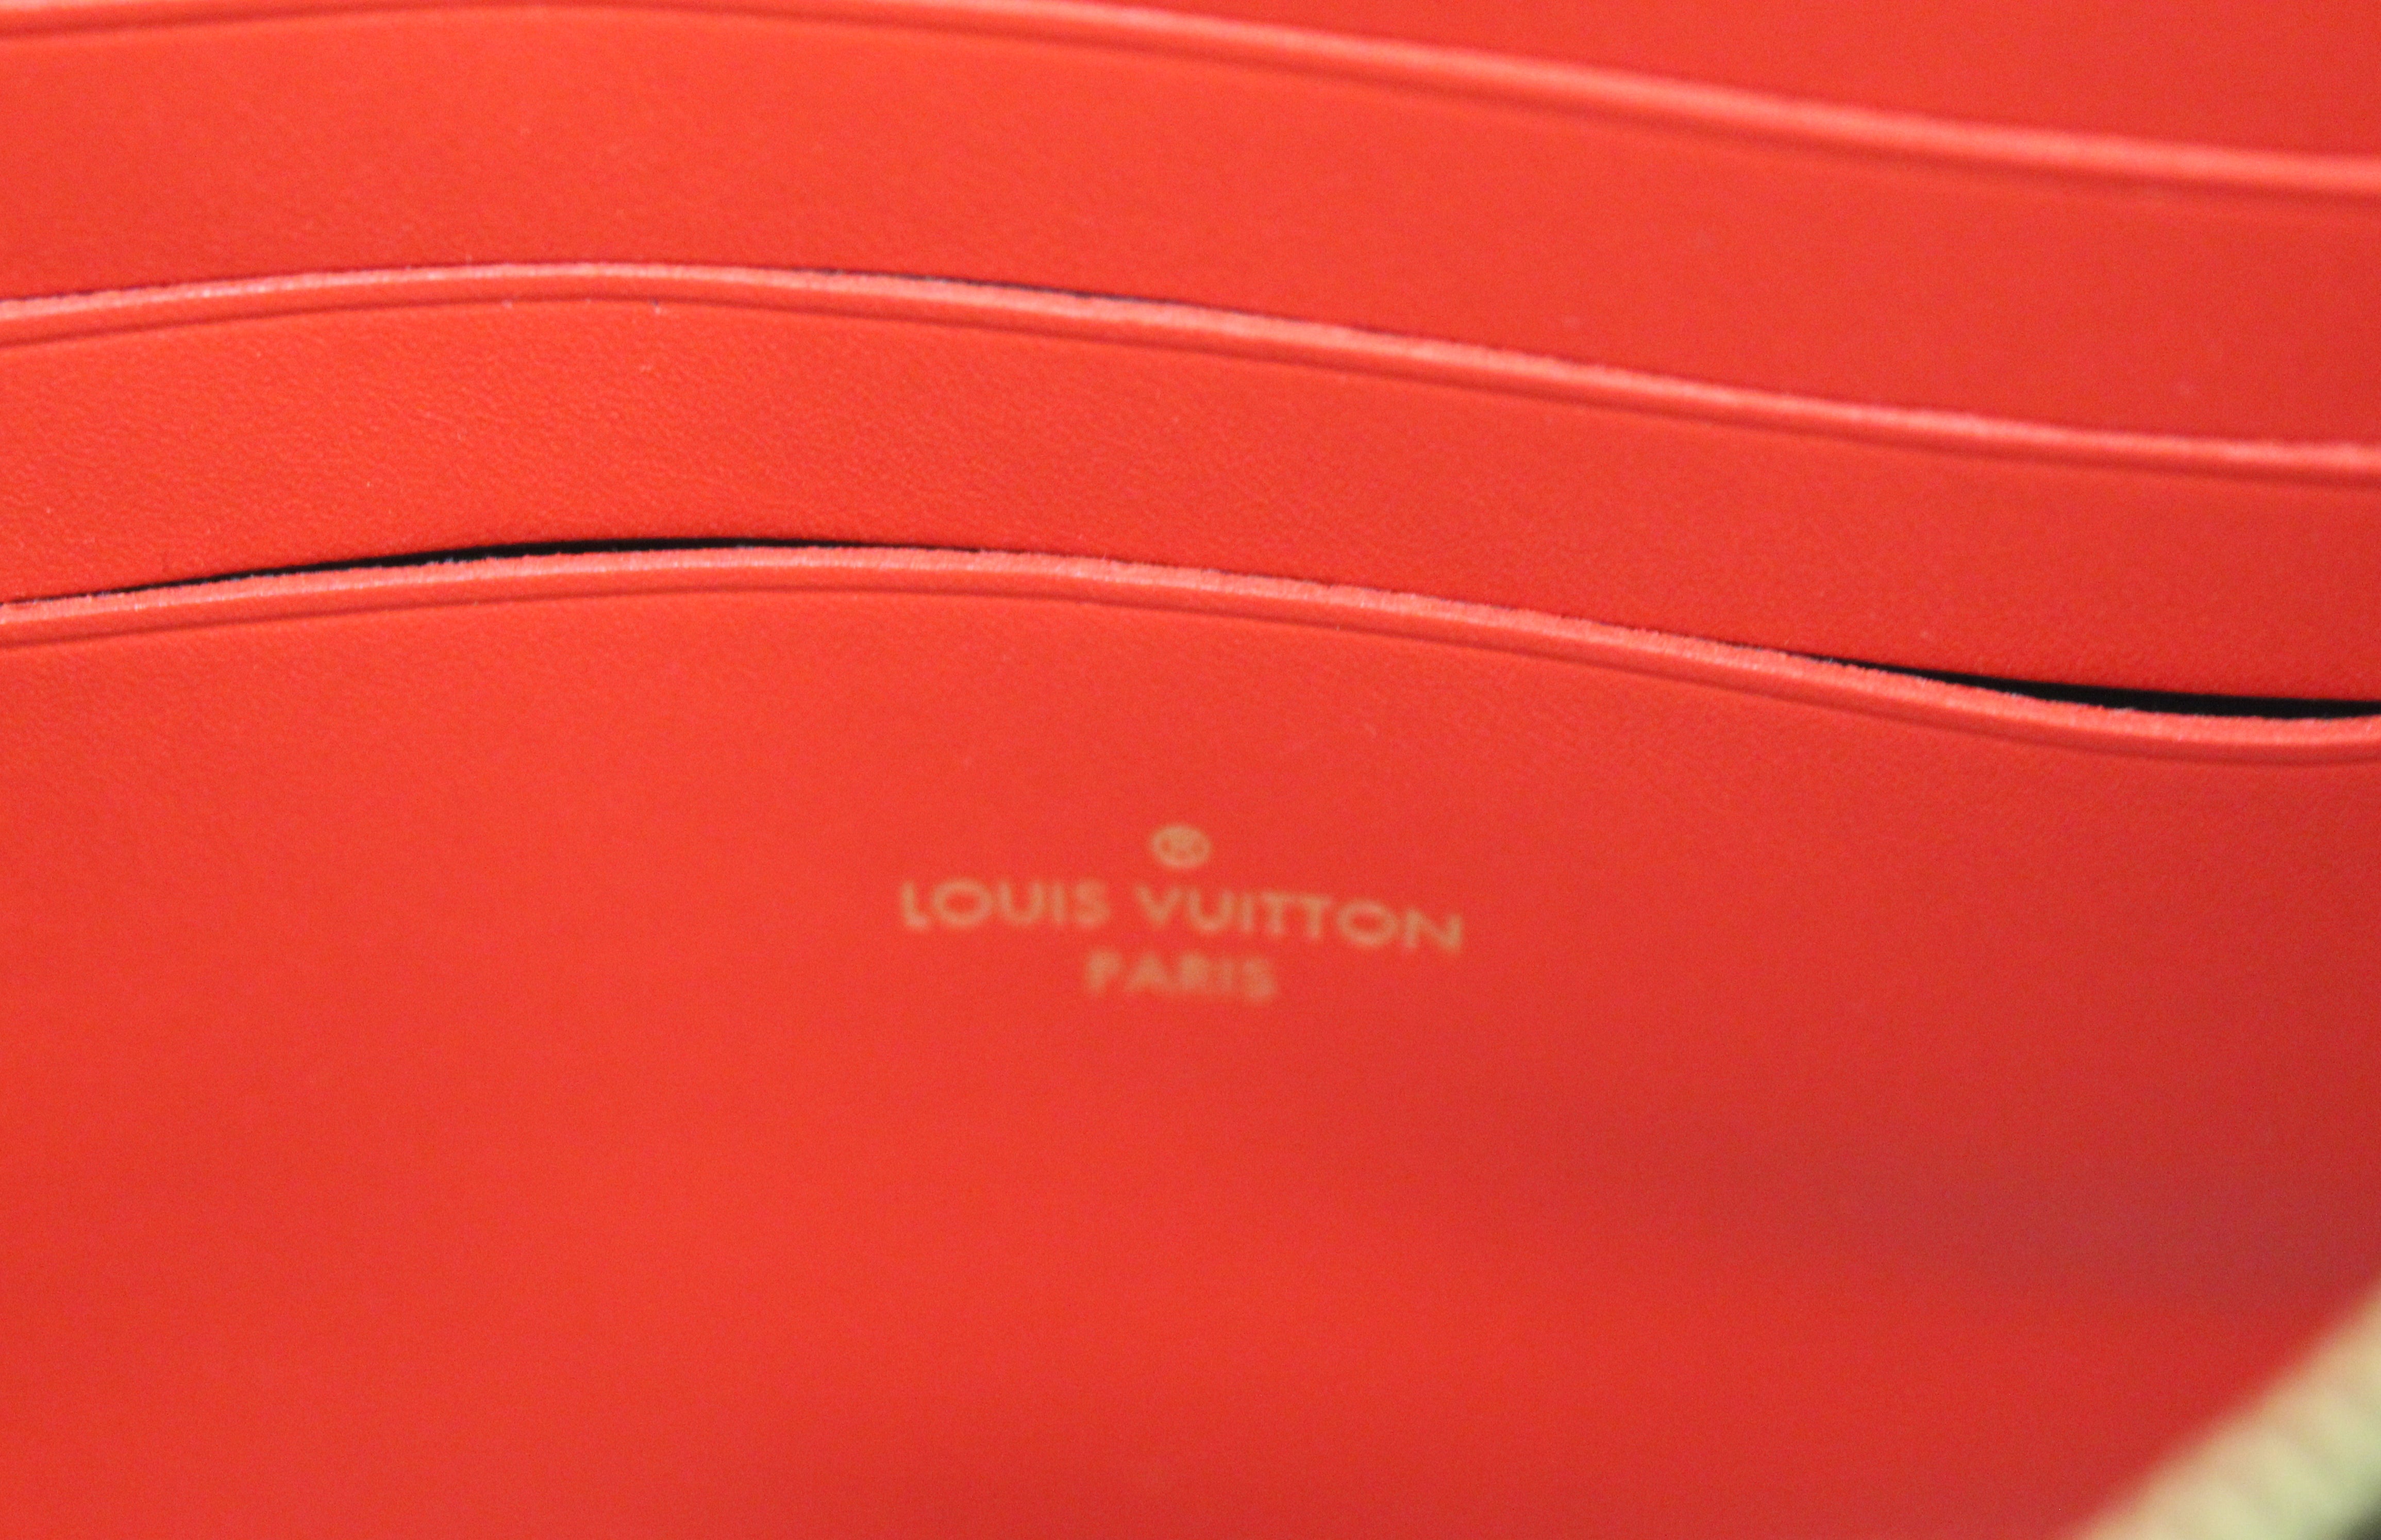 082323 SNEAK PEEK Preloved Louis Vuitton Blooming Flowers Bag